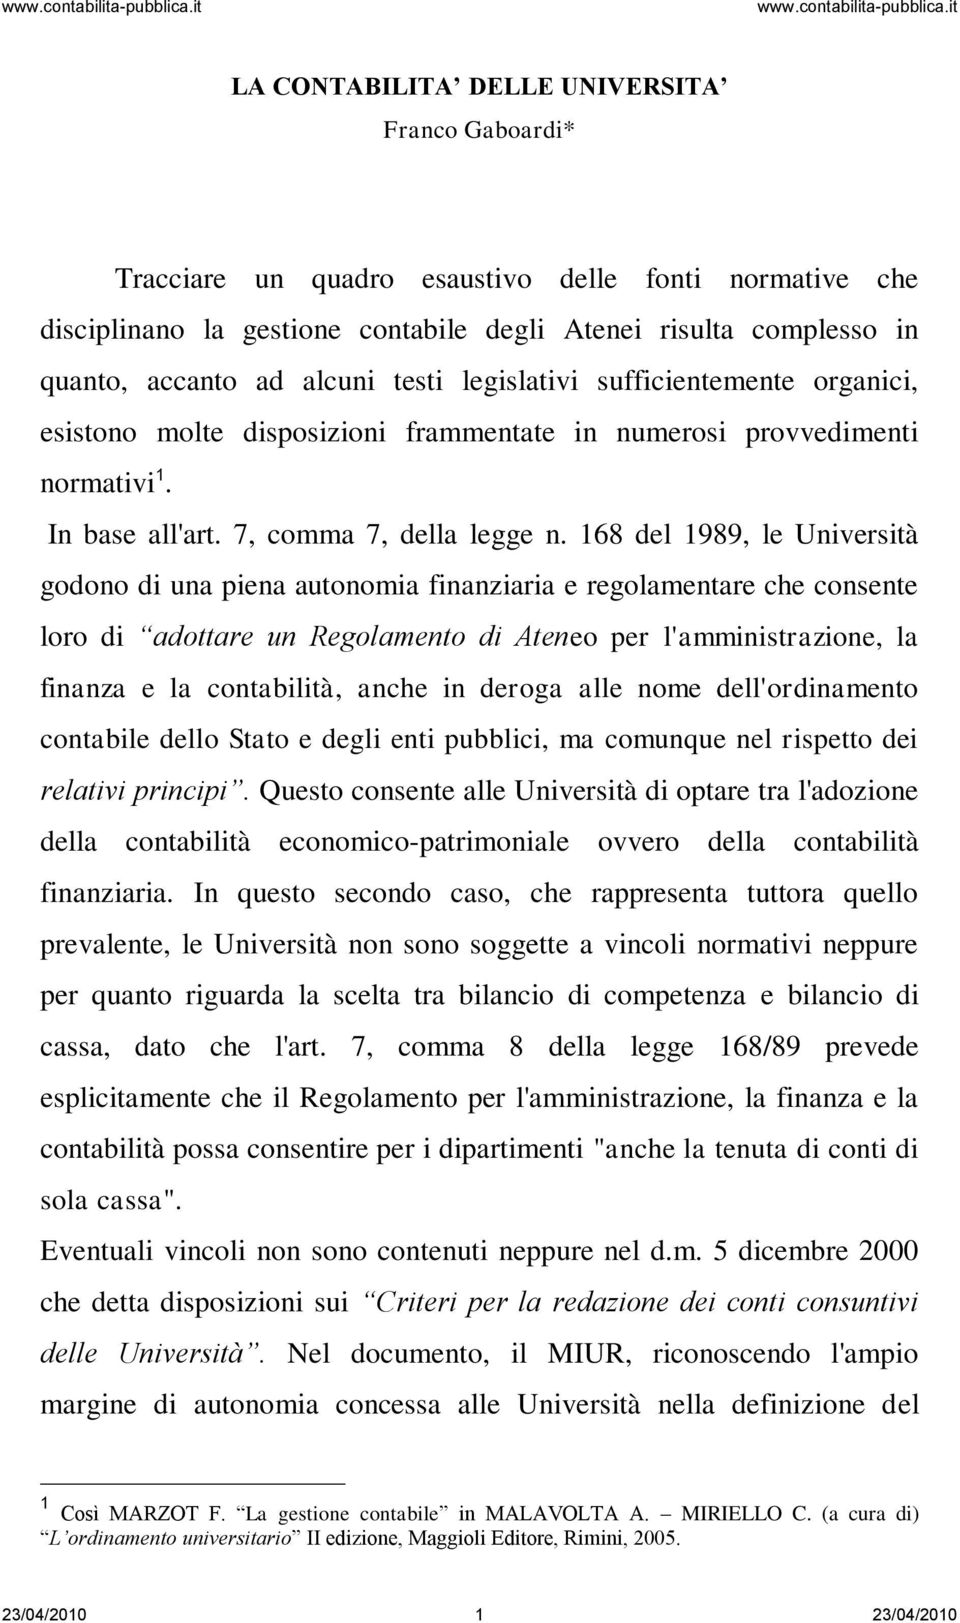 168 del 1989, le Università godono di una piena autonomia finanziaria e regolamentare che consente loro di adottare un Regolamento di Ateneo per l'amministrazione, la finanza e la contabilità, anche